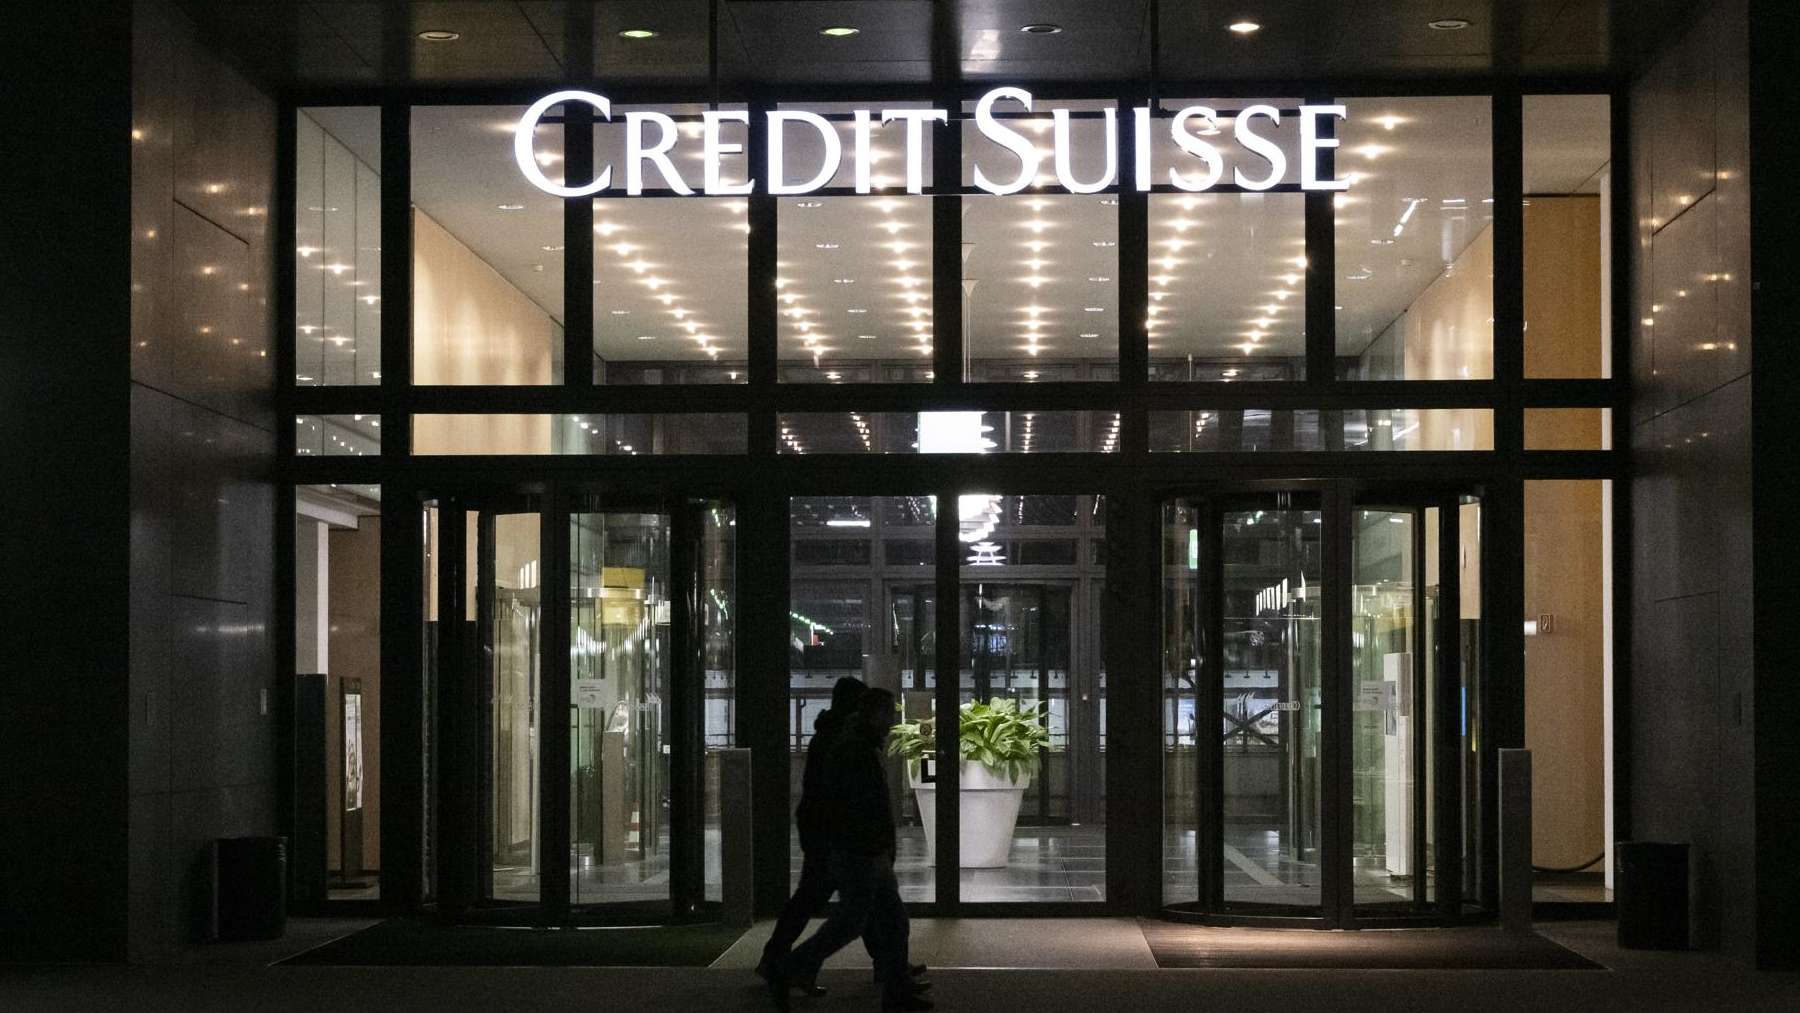 Sede Credit Suisse.